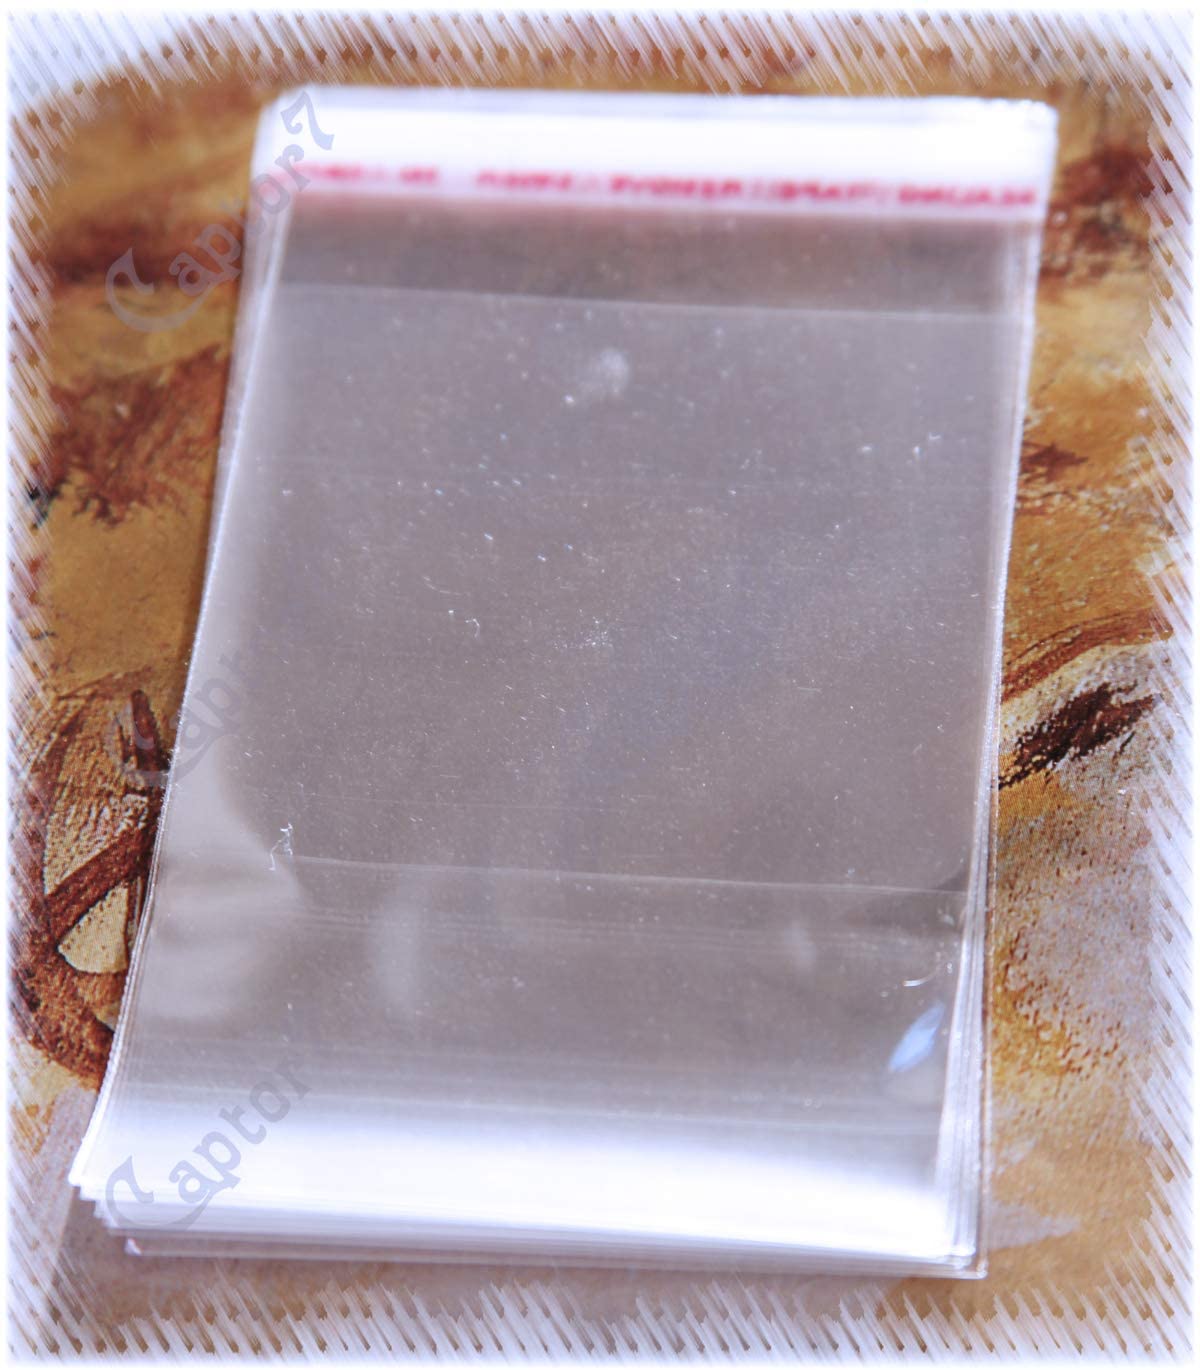 100 BUSTINE TRASPARENTI BUSTE adesive PLASTICA 8 x 5,8 cm CHIUSURA ADESIVA  SACCHETTI - RomaLab